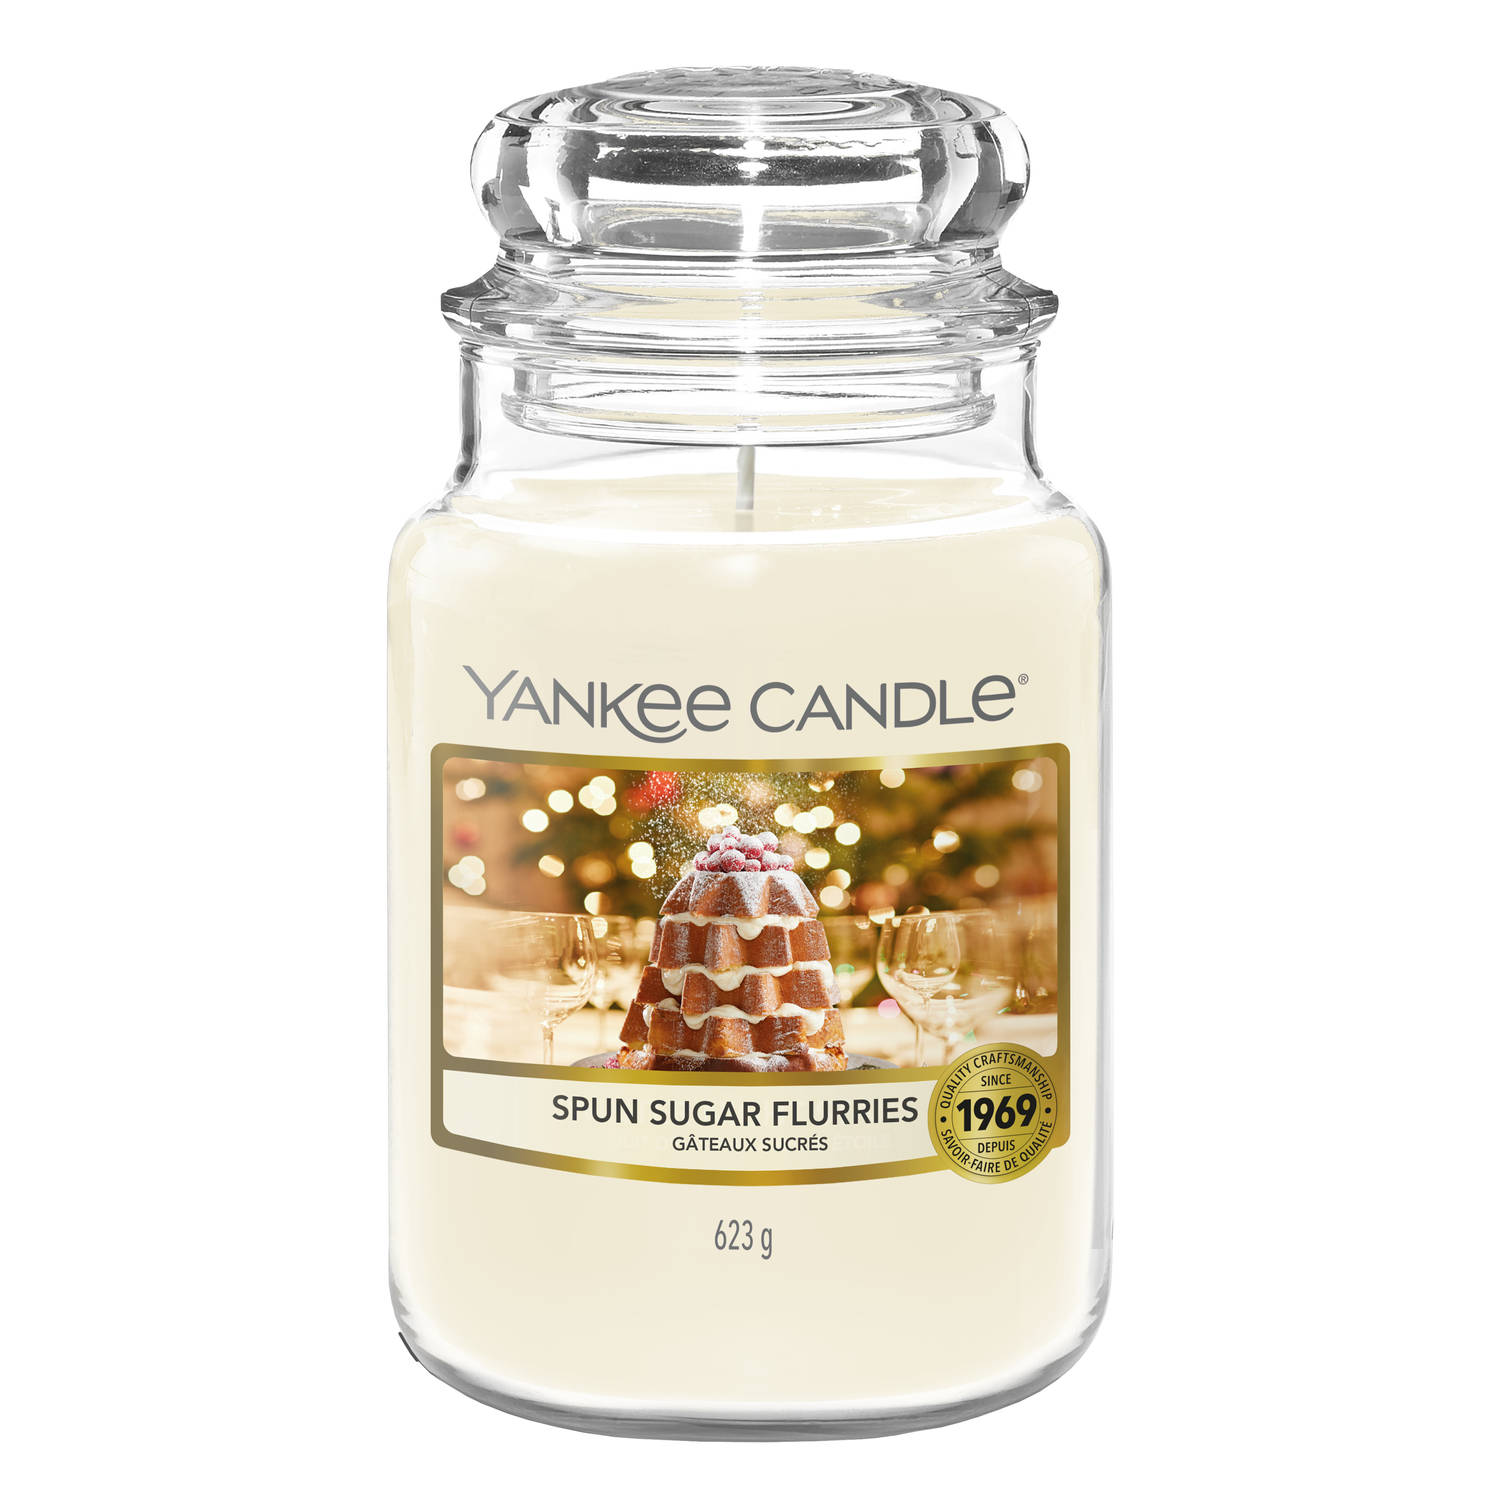 Yankee Candle - Spun Sugar Flurries Large Jar